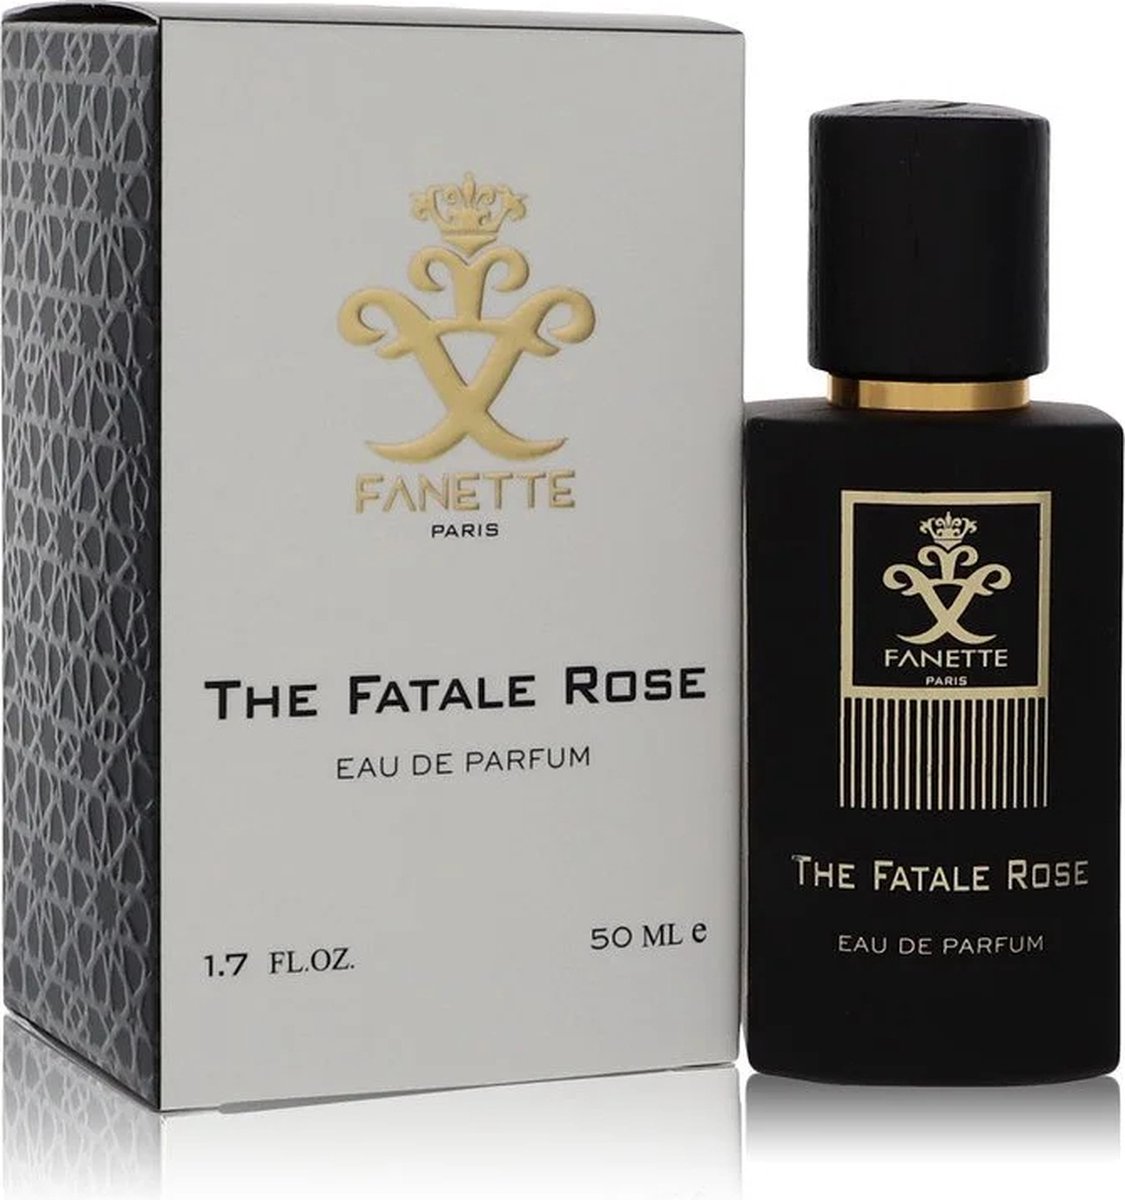 Fanette The Fatale Rose eau de parfum spray 50 ml